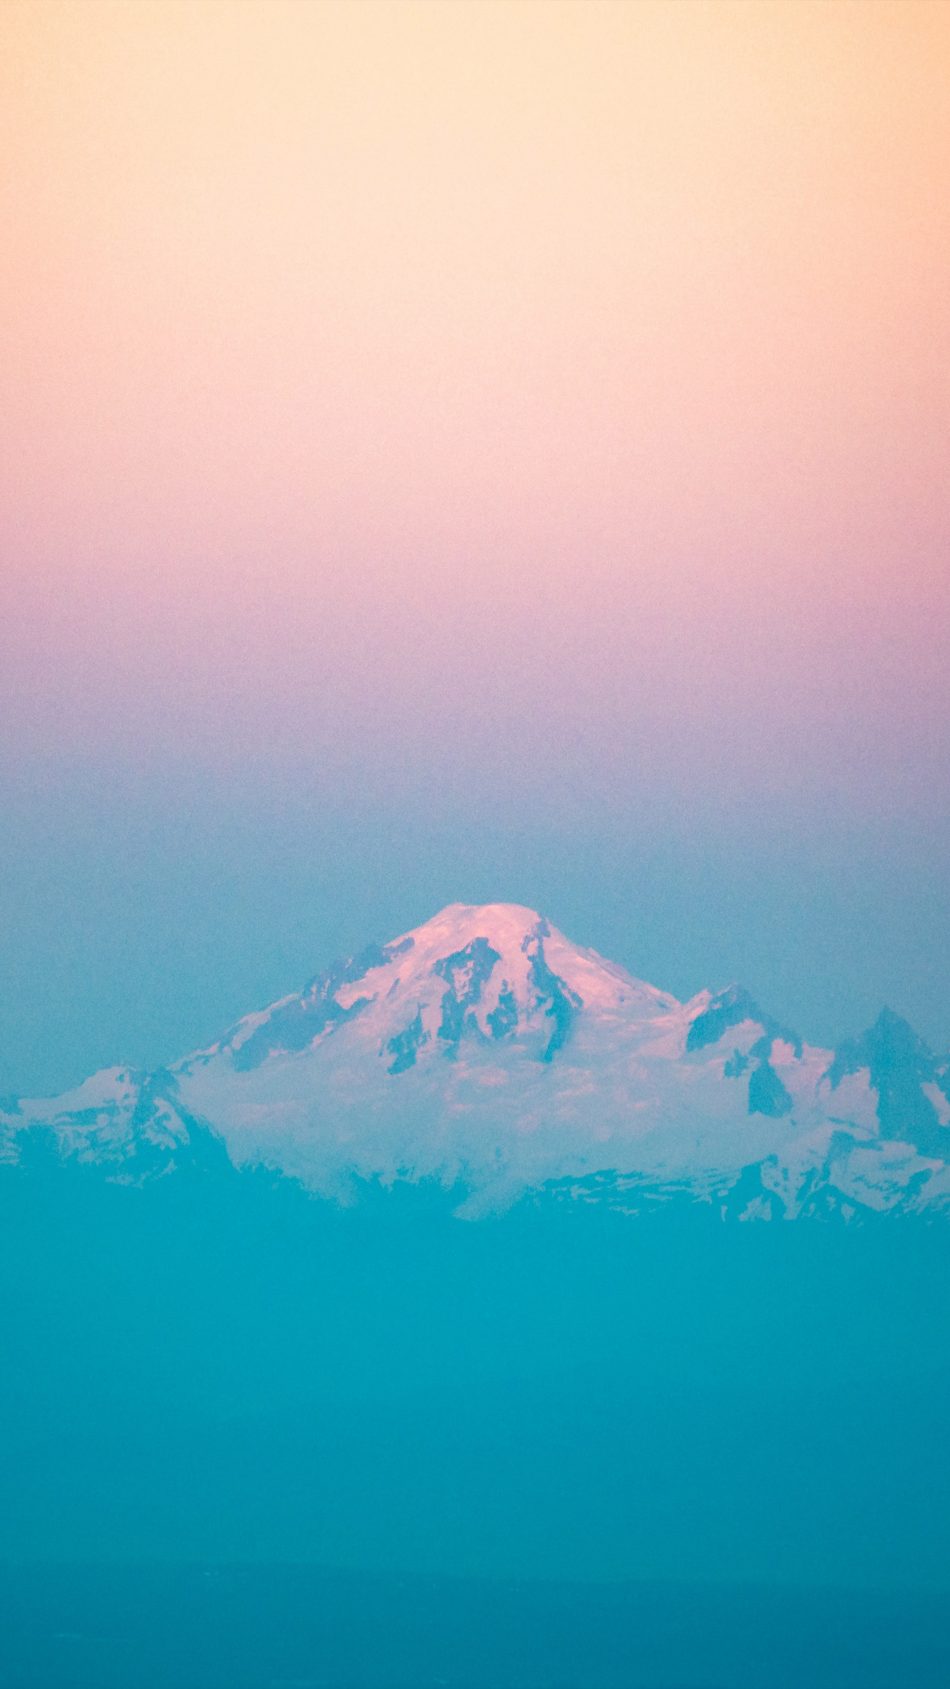 Mountain Peak Sunset Orange Blue Mist 4k & Ultra Hd - Summit , HD Wallpaper & Backgrounds